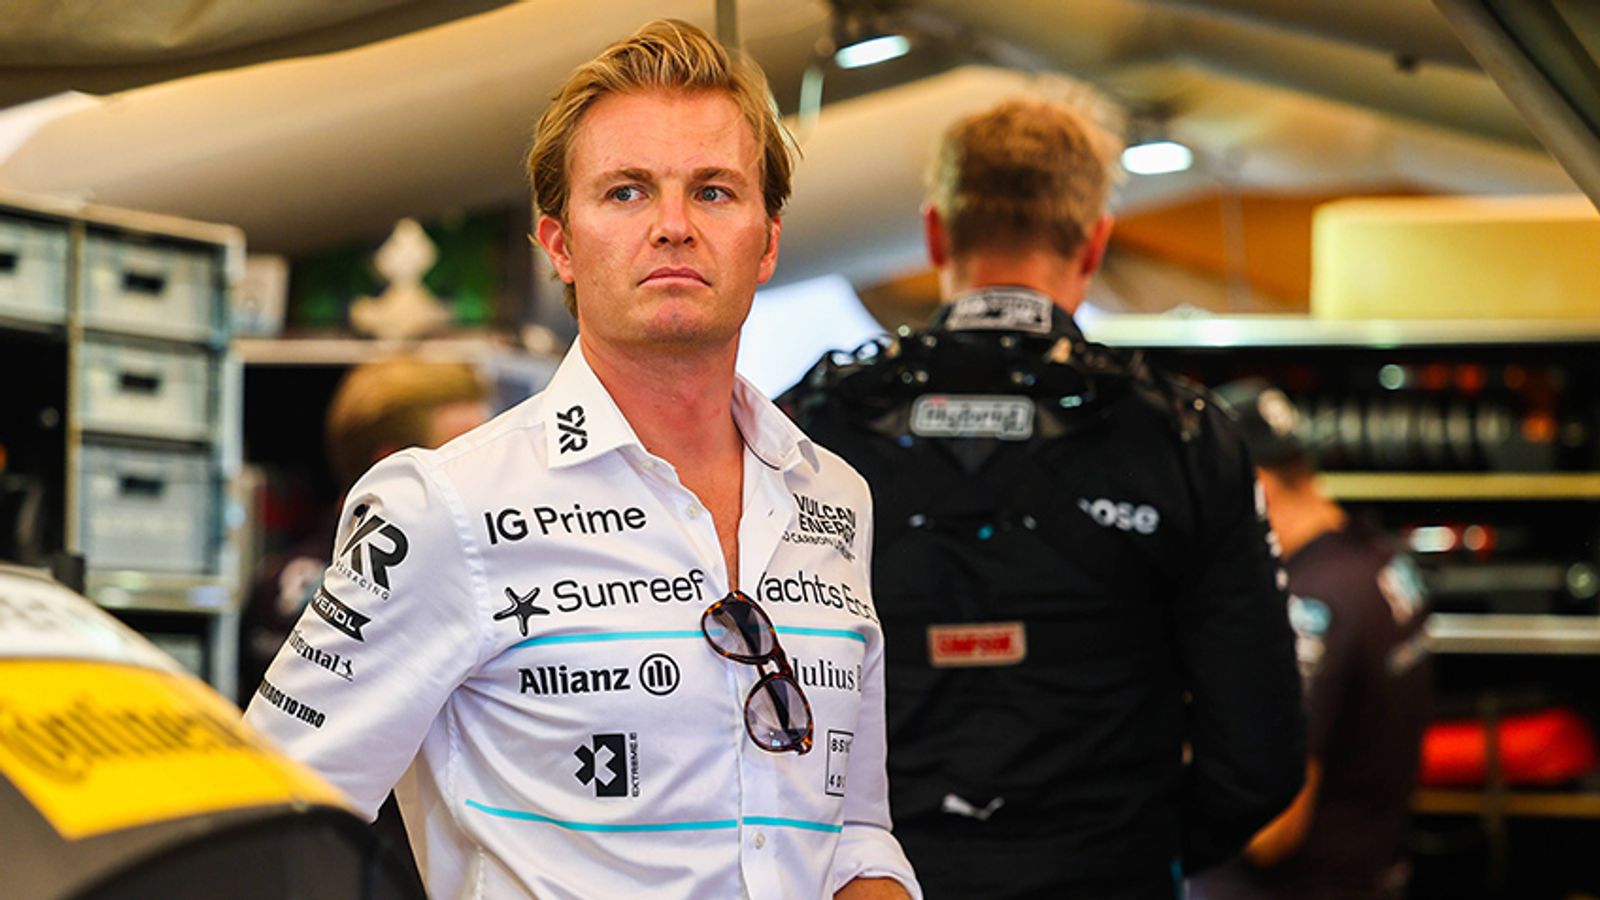 Formel 1 Nico Rosberg als Experte bei Übertragungen von F1-Rennen Formel 1 News Sky Sport